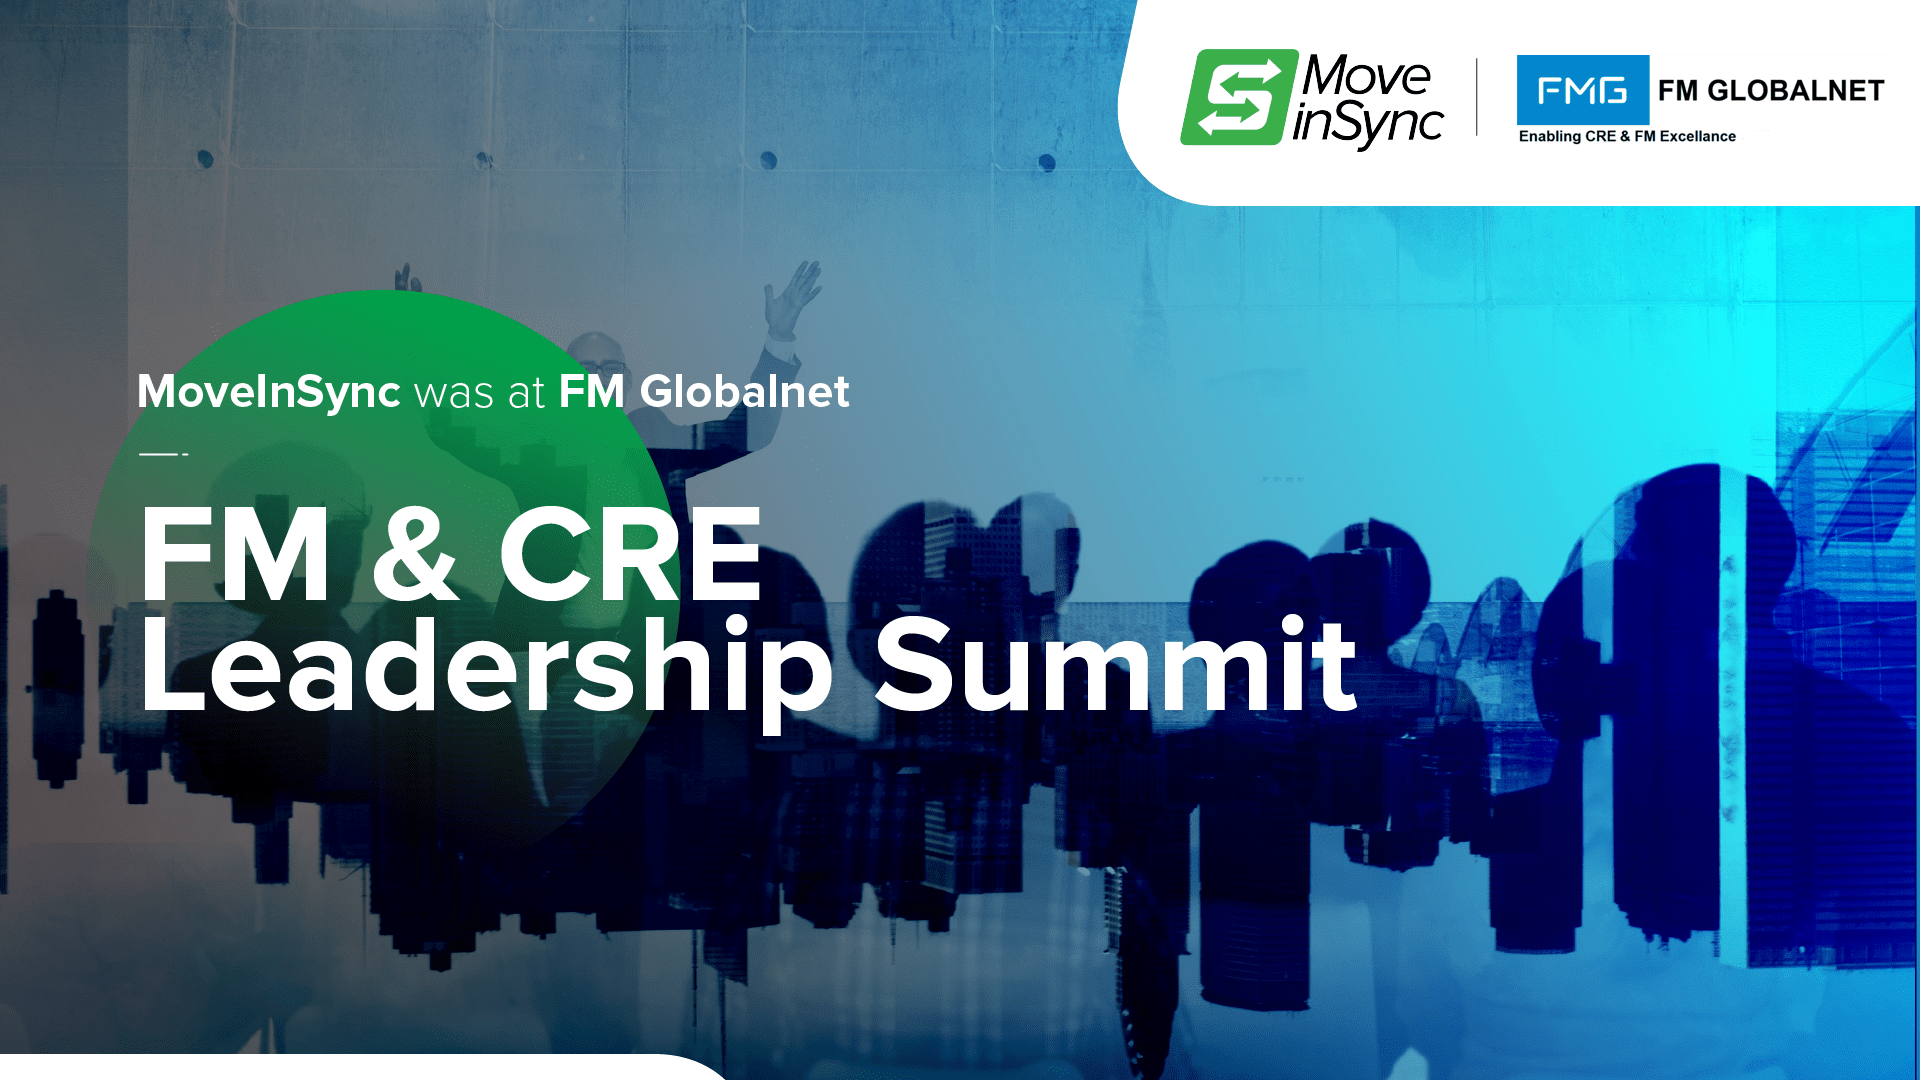 FM & CRE Leadership Summit